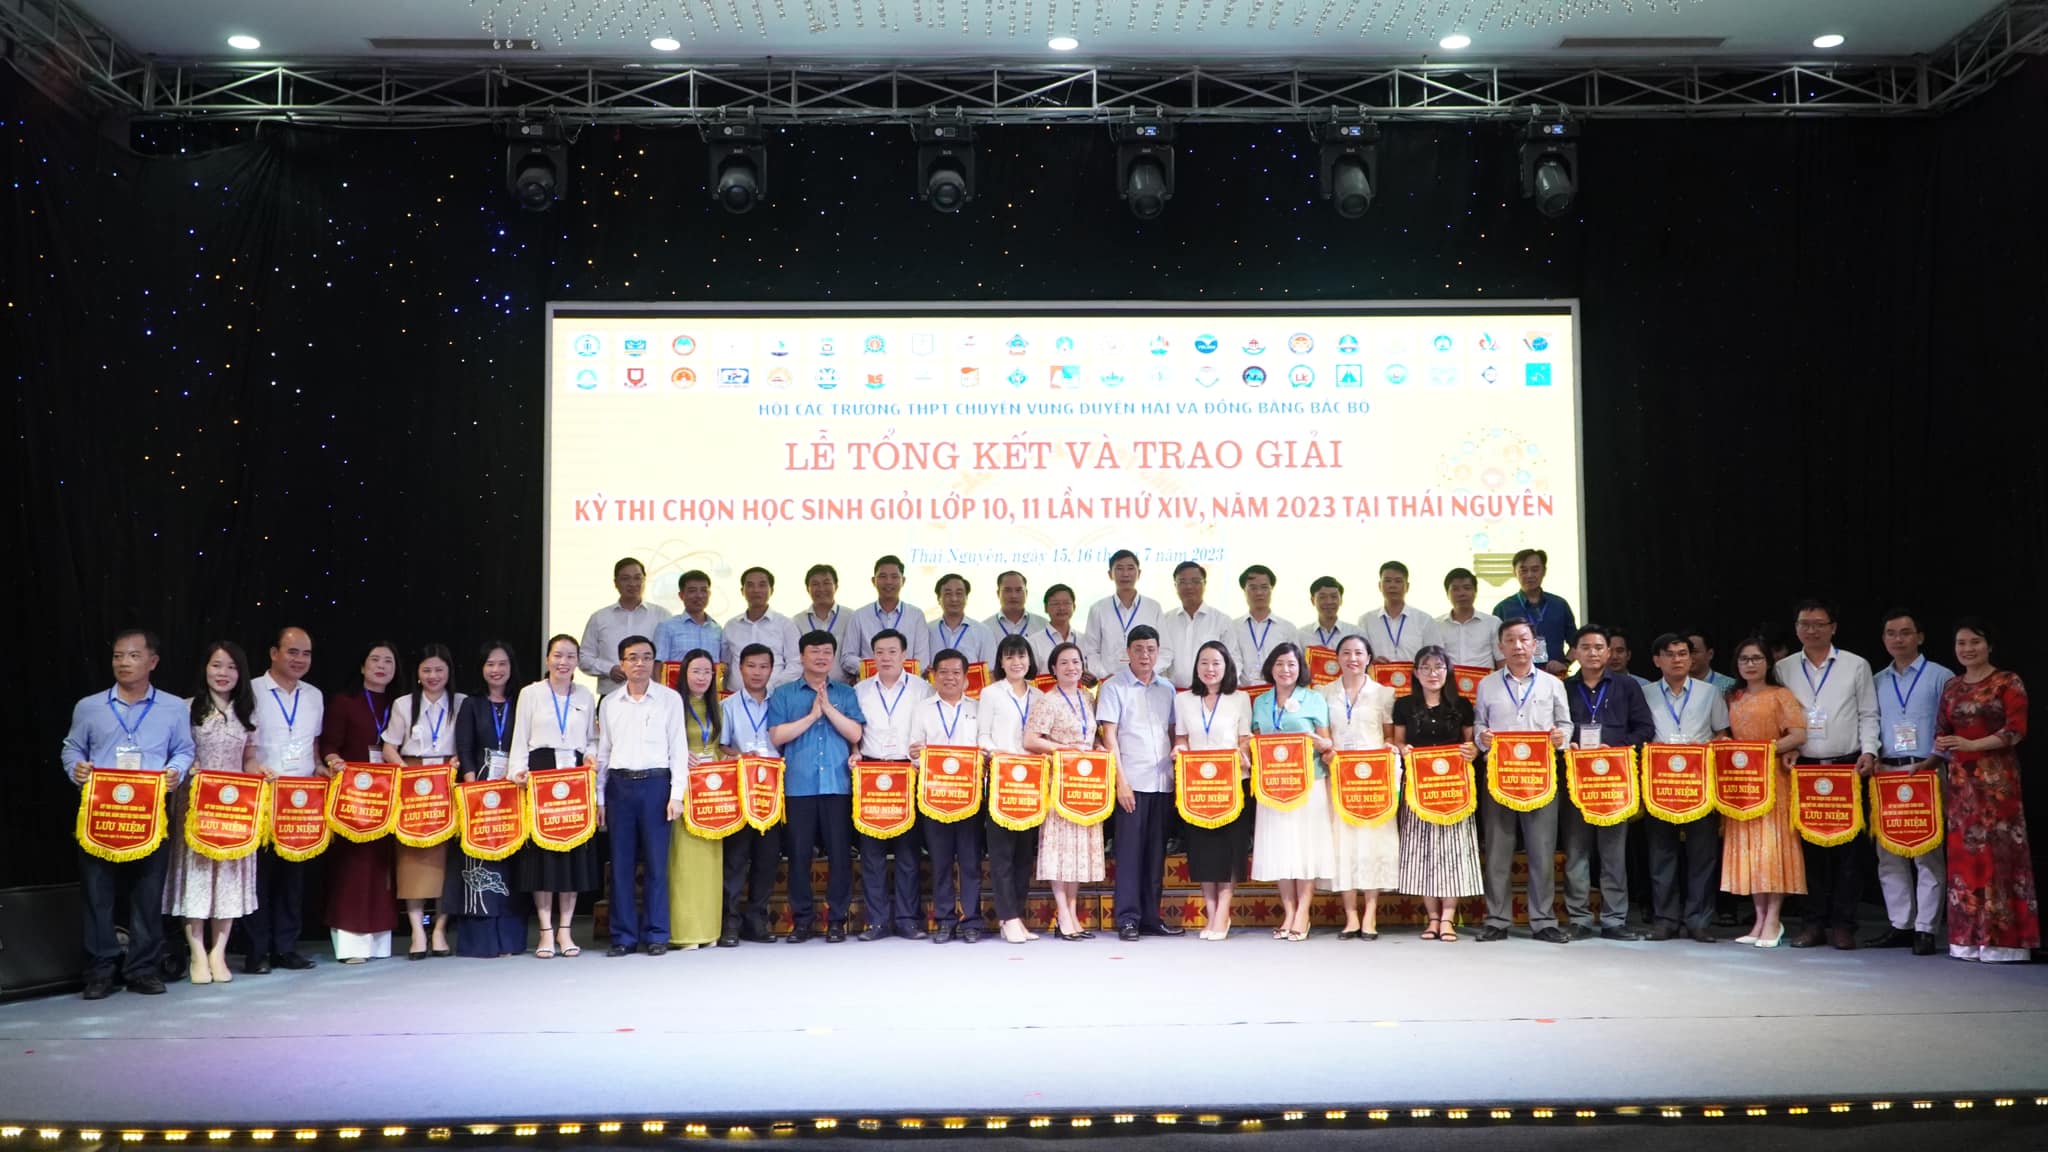 100% học sinh THPT chuyên Lê Hồng Phong, Nam Định đoạt giải trong cuộc thi chọn HSG các trường THPT chuyên khu vực DH&ĐBBB lần thứ XIV